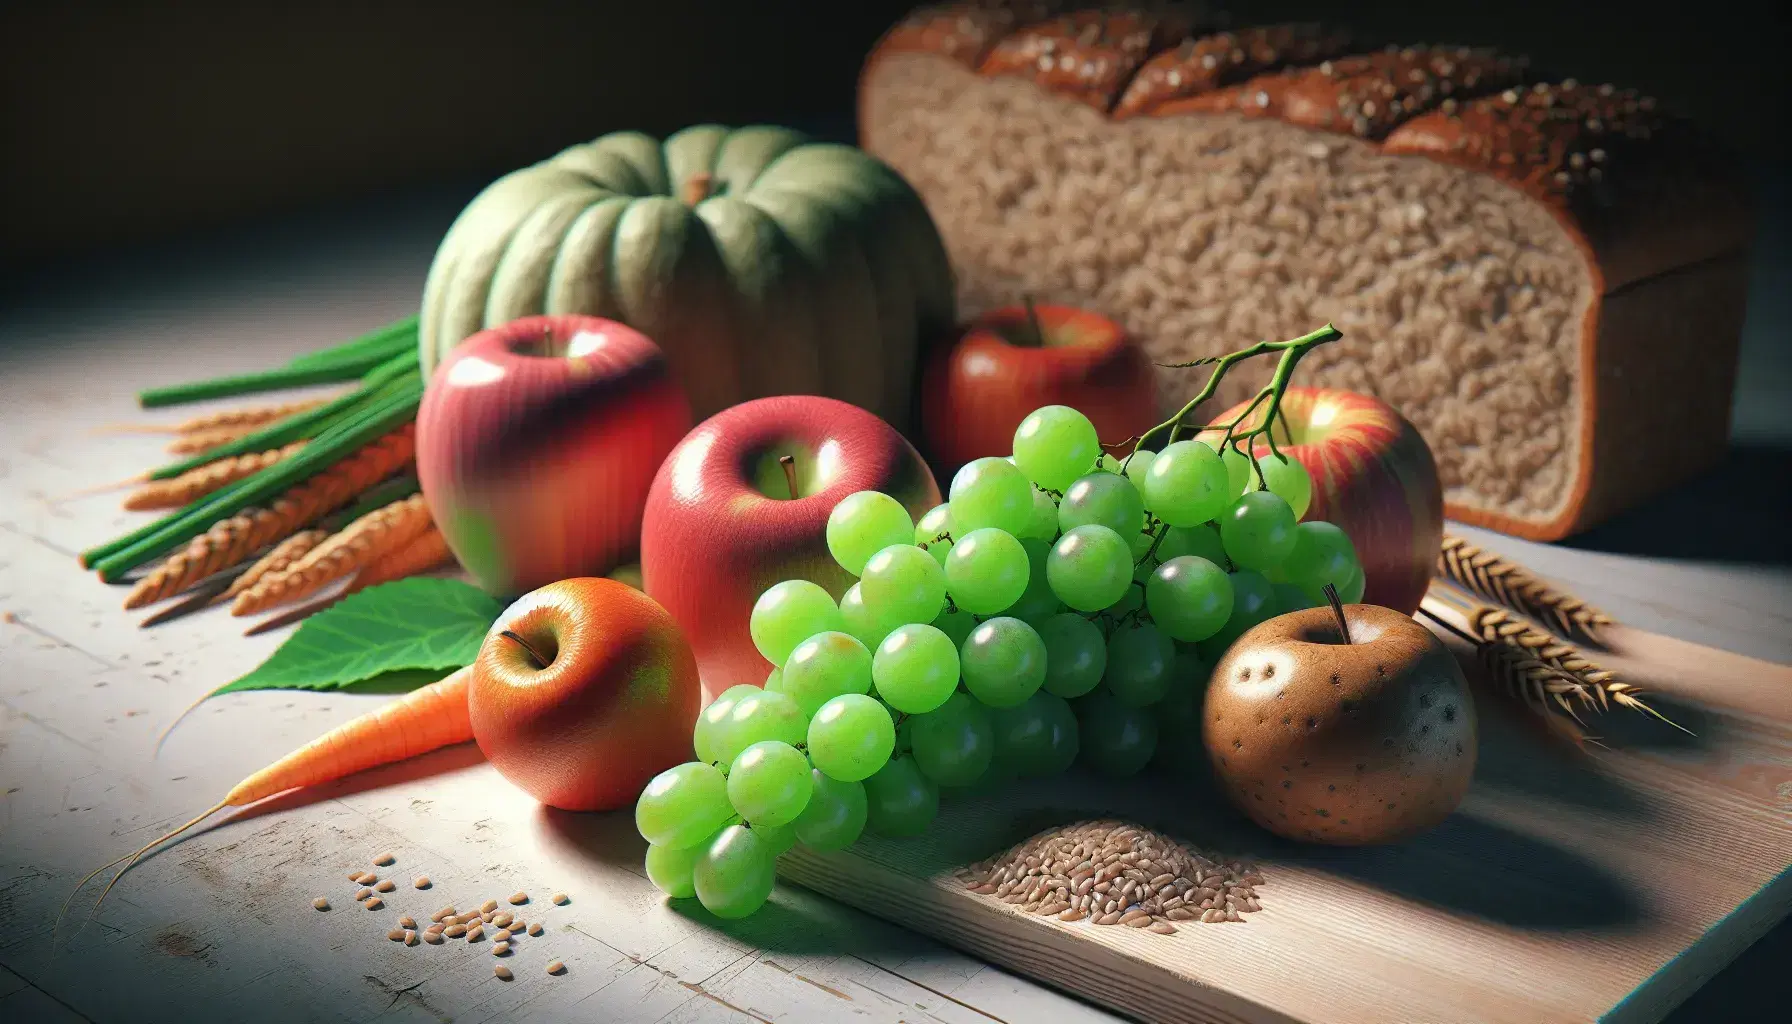 Frutta e verdura fresche su piano di lavoro in legno chiaro: uva verde, mela rossa, banana matura, pane integrale, carota e patata.